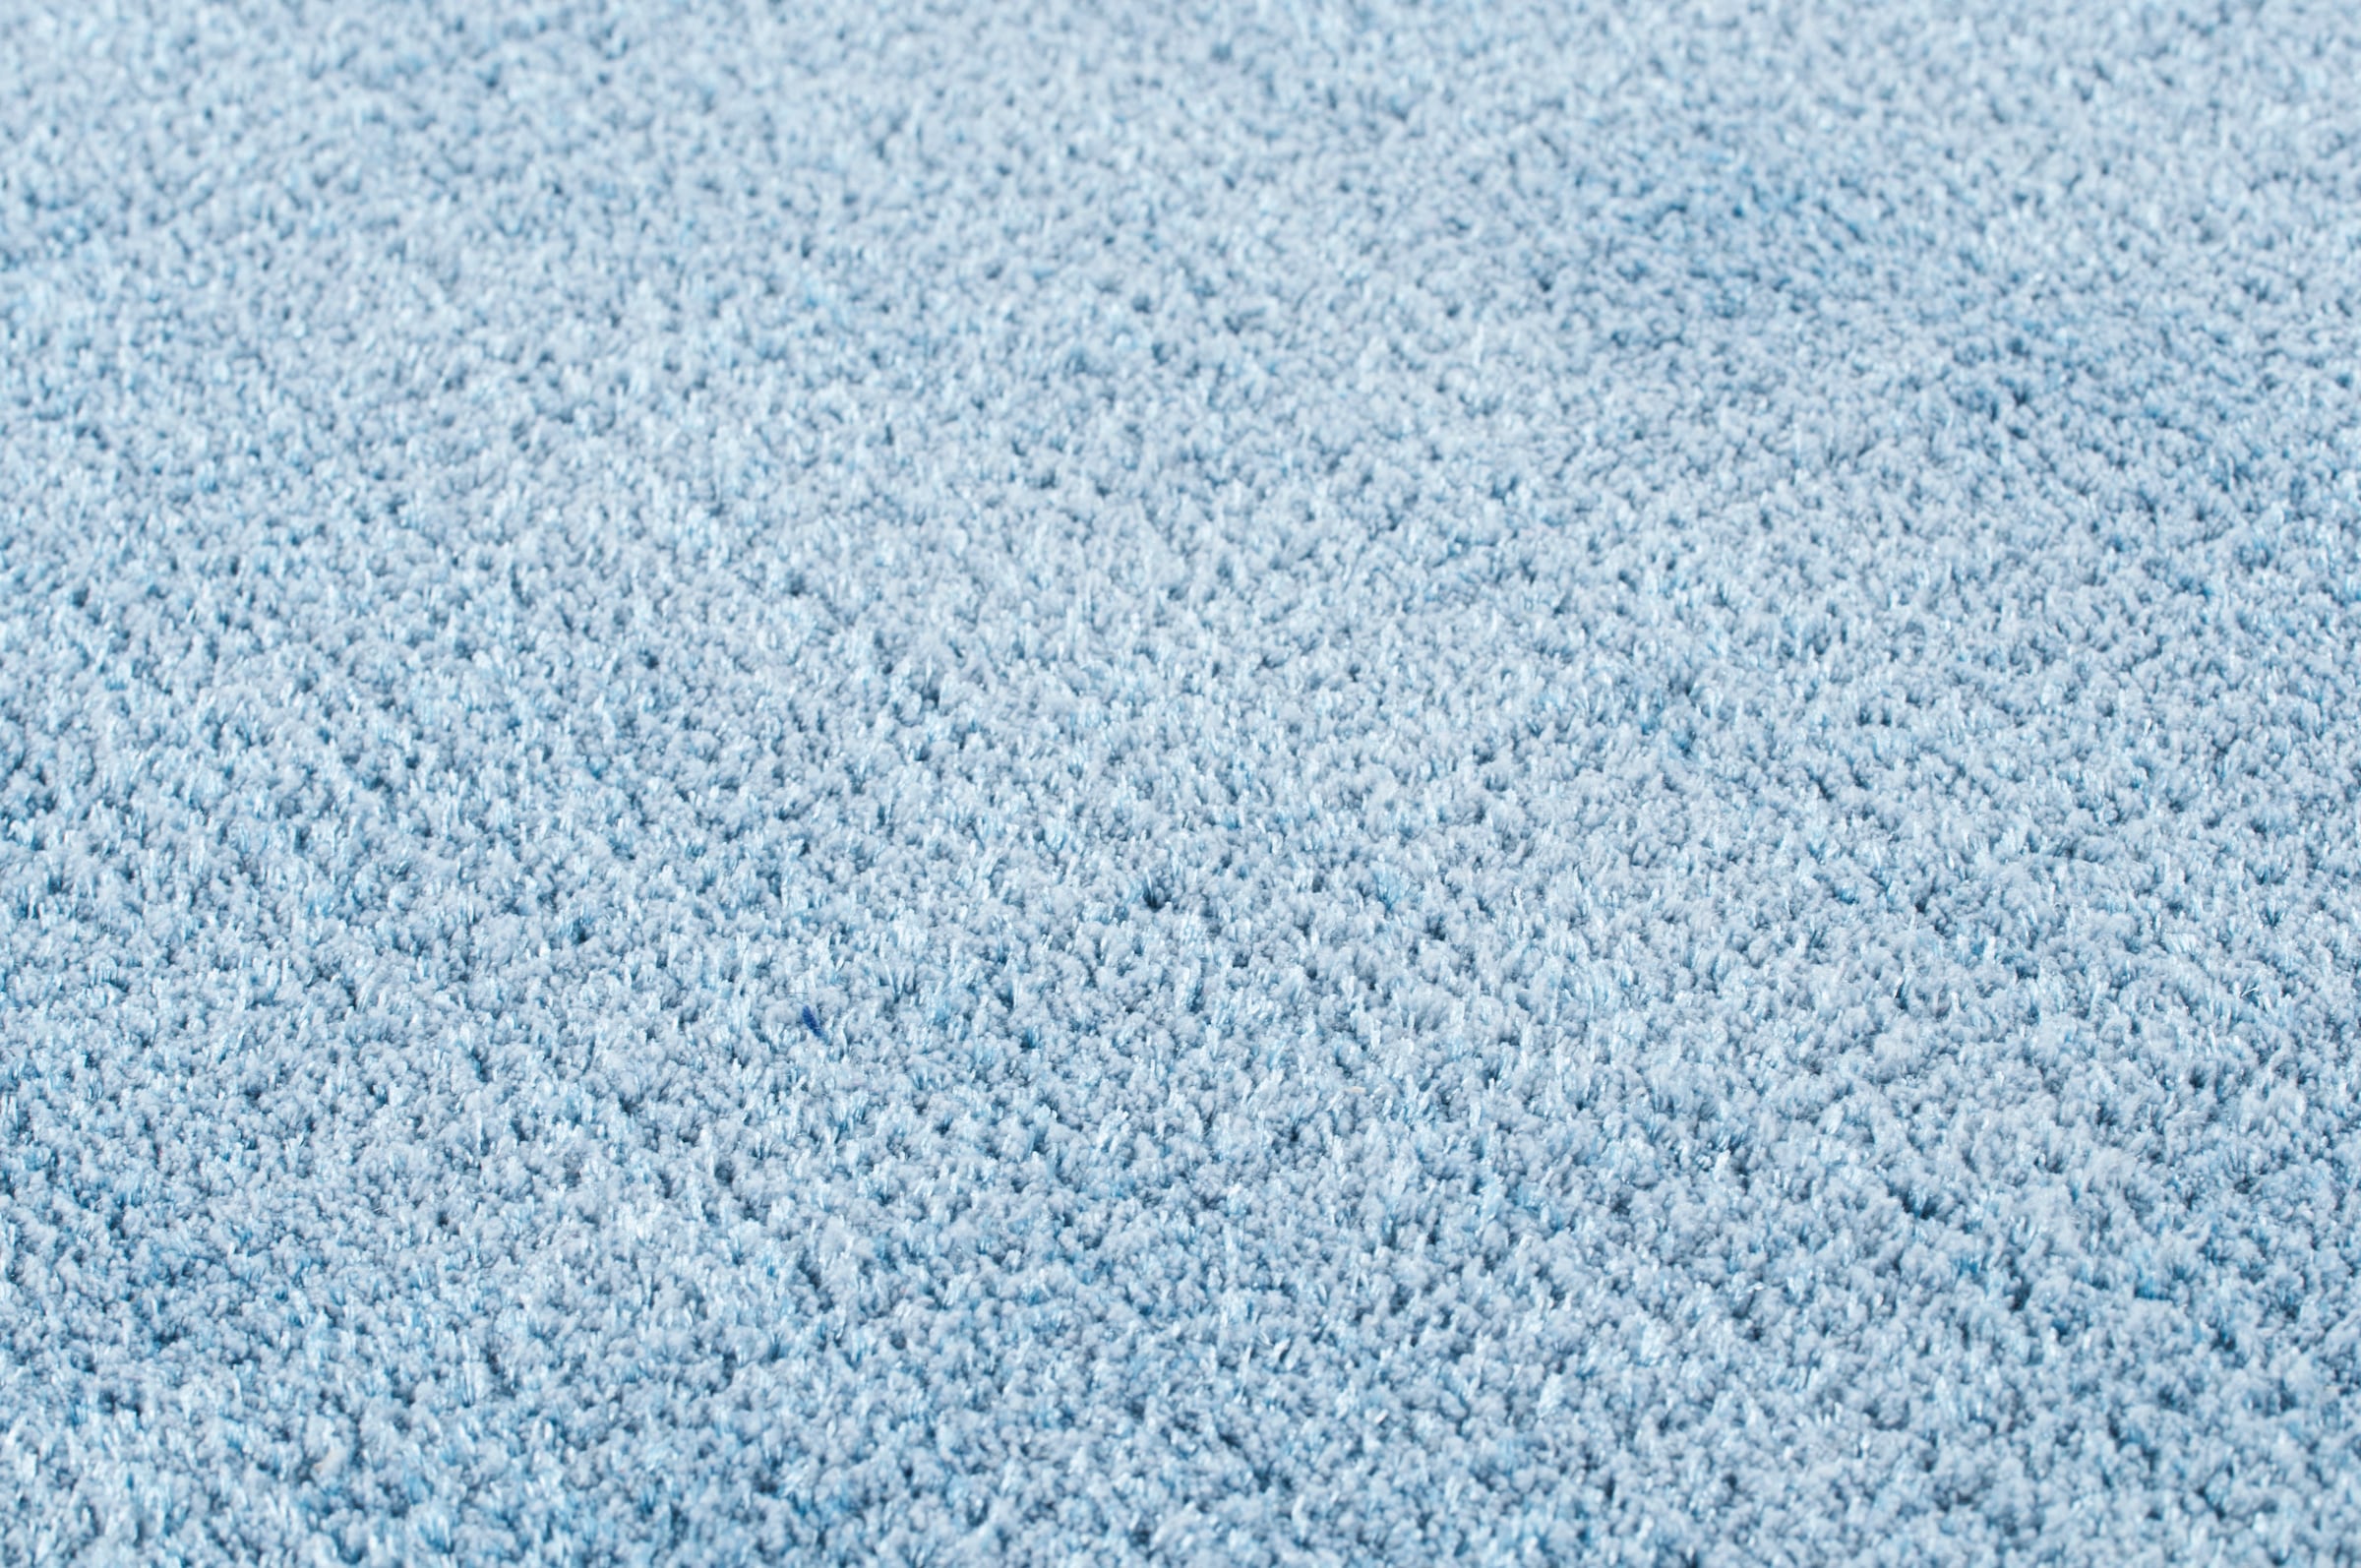 TOM TAILOR HOME Teppich »Powder uni«, rechteckig, Uni-Farben, besonders weich und flauschig